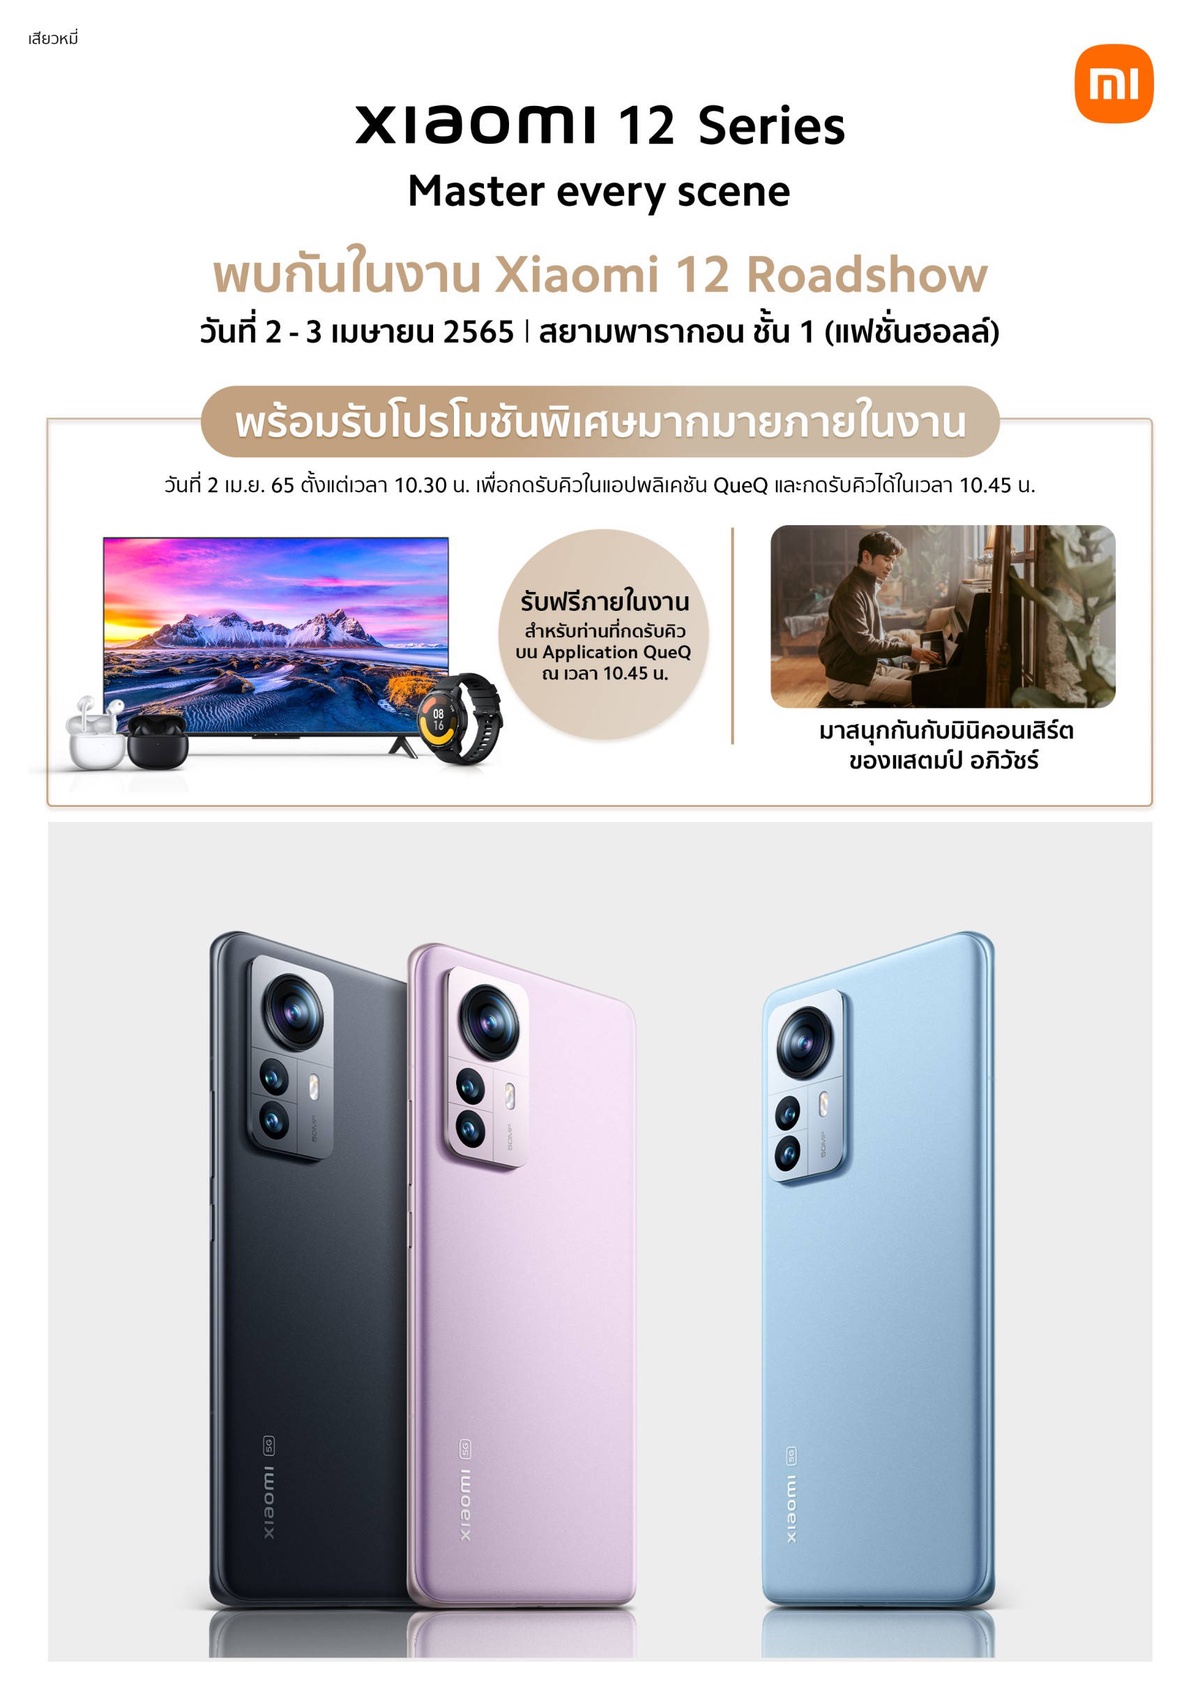 เสียวหมี่เตรียมจัดงาน Xiaomi 12 Roadshow ในวันที่ 2-3 เม.ย. นี้ ณ ศูนย์การค้าสยามพารากอน โอกาสสุดท้ายของลูกค้า Xiaomi 12 Pro และ Xiaomi 12